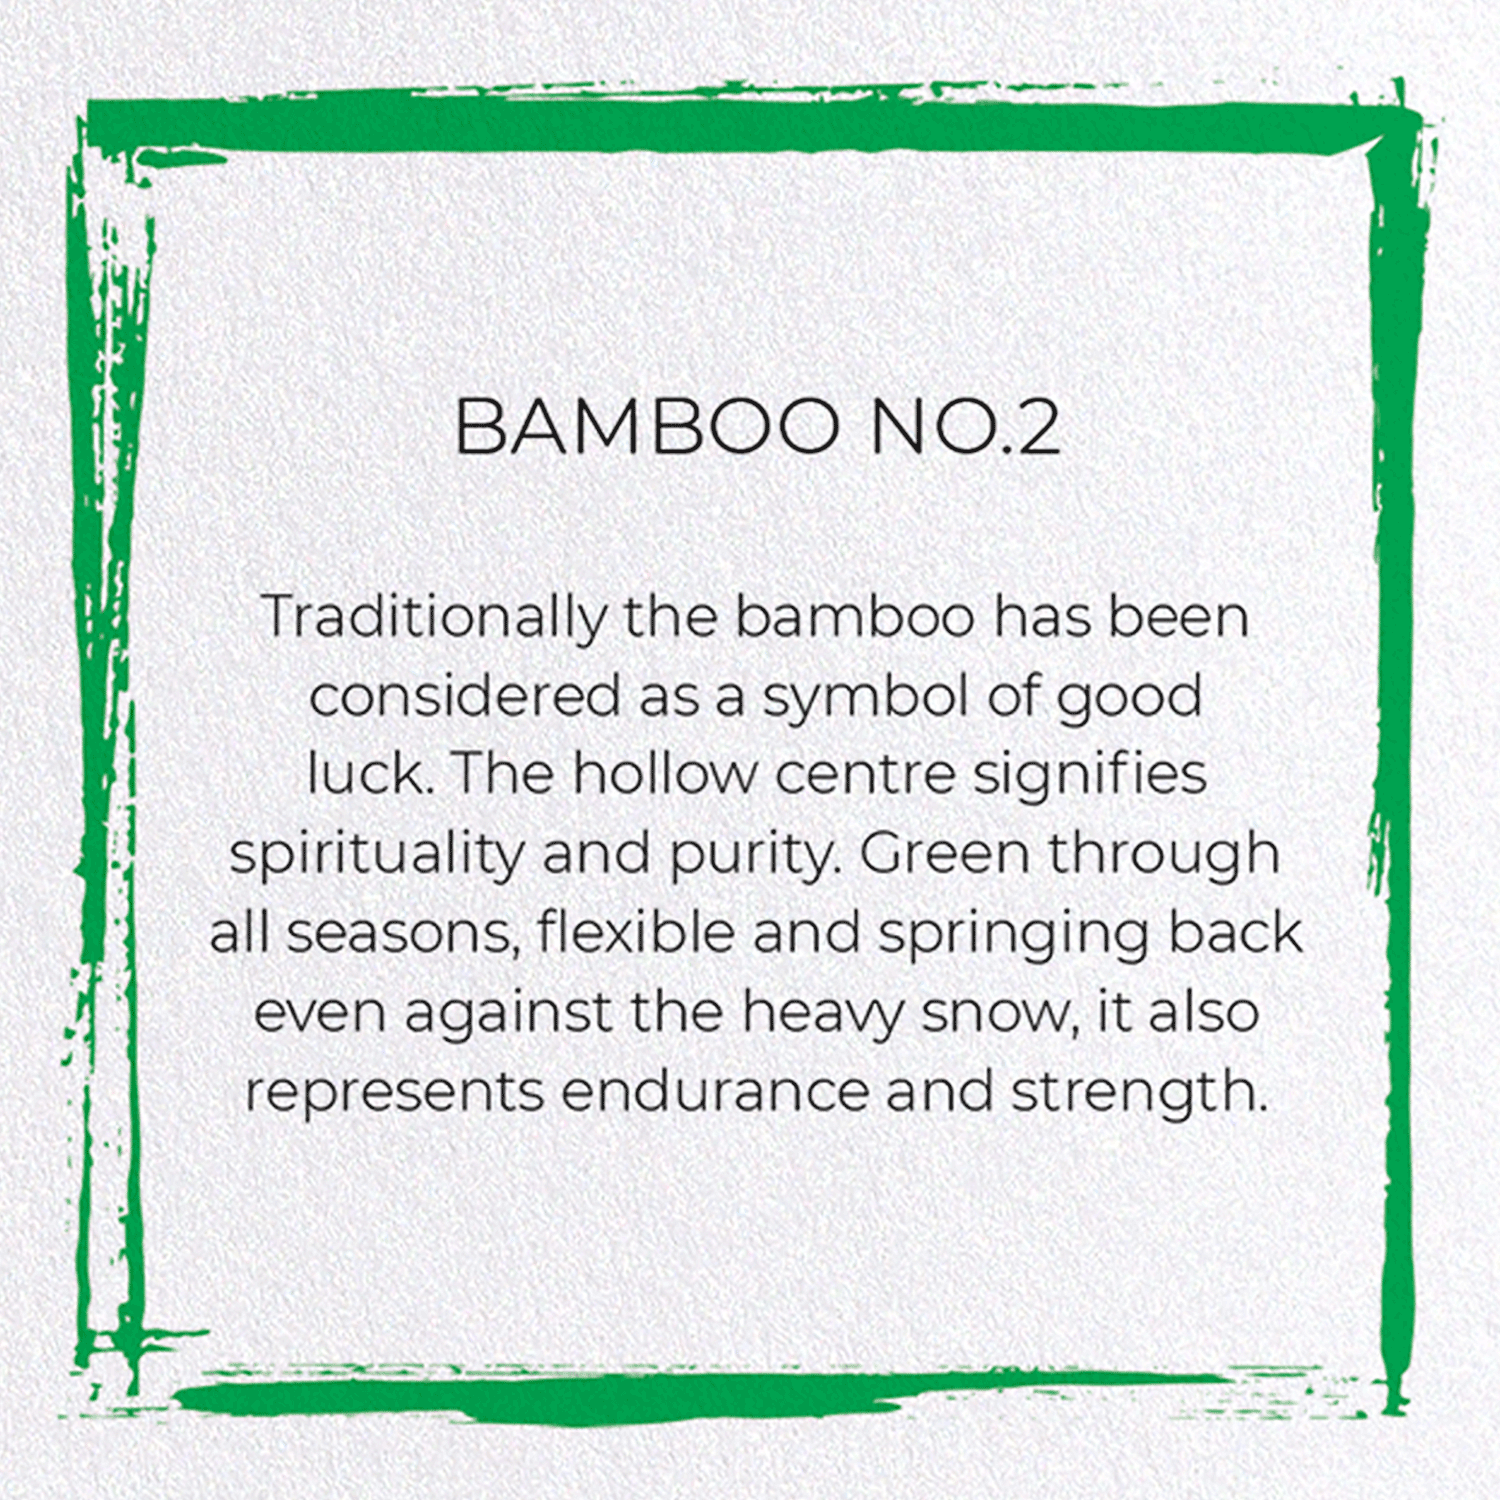 BAMBOO NO.2